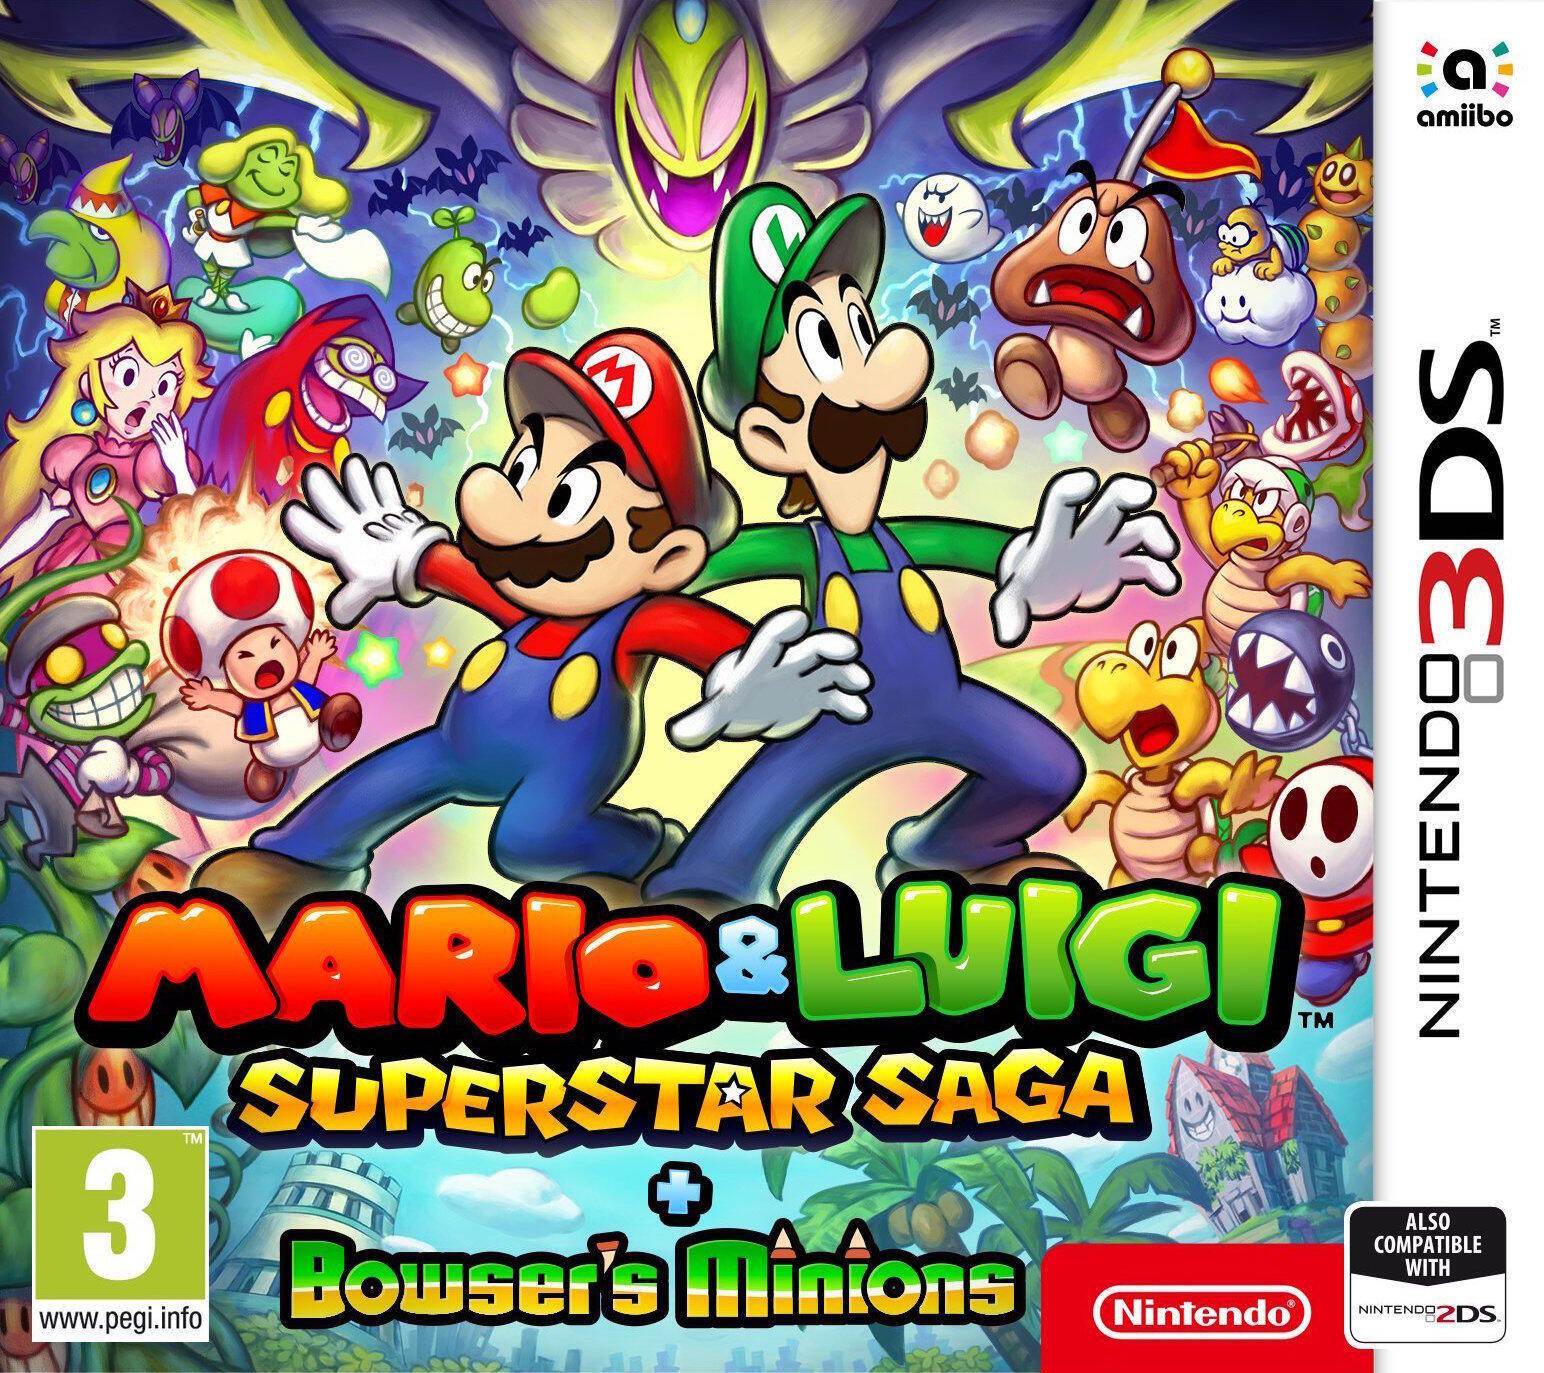 Nintendo Mario & Luigi Superstar Saga + Bowsers Onderdanen Nintendo 3DS